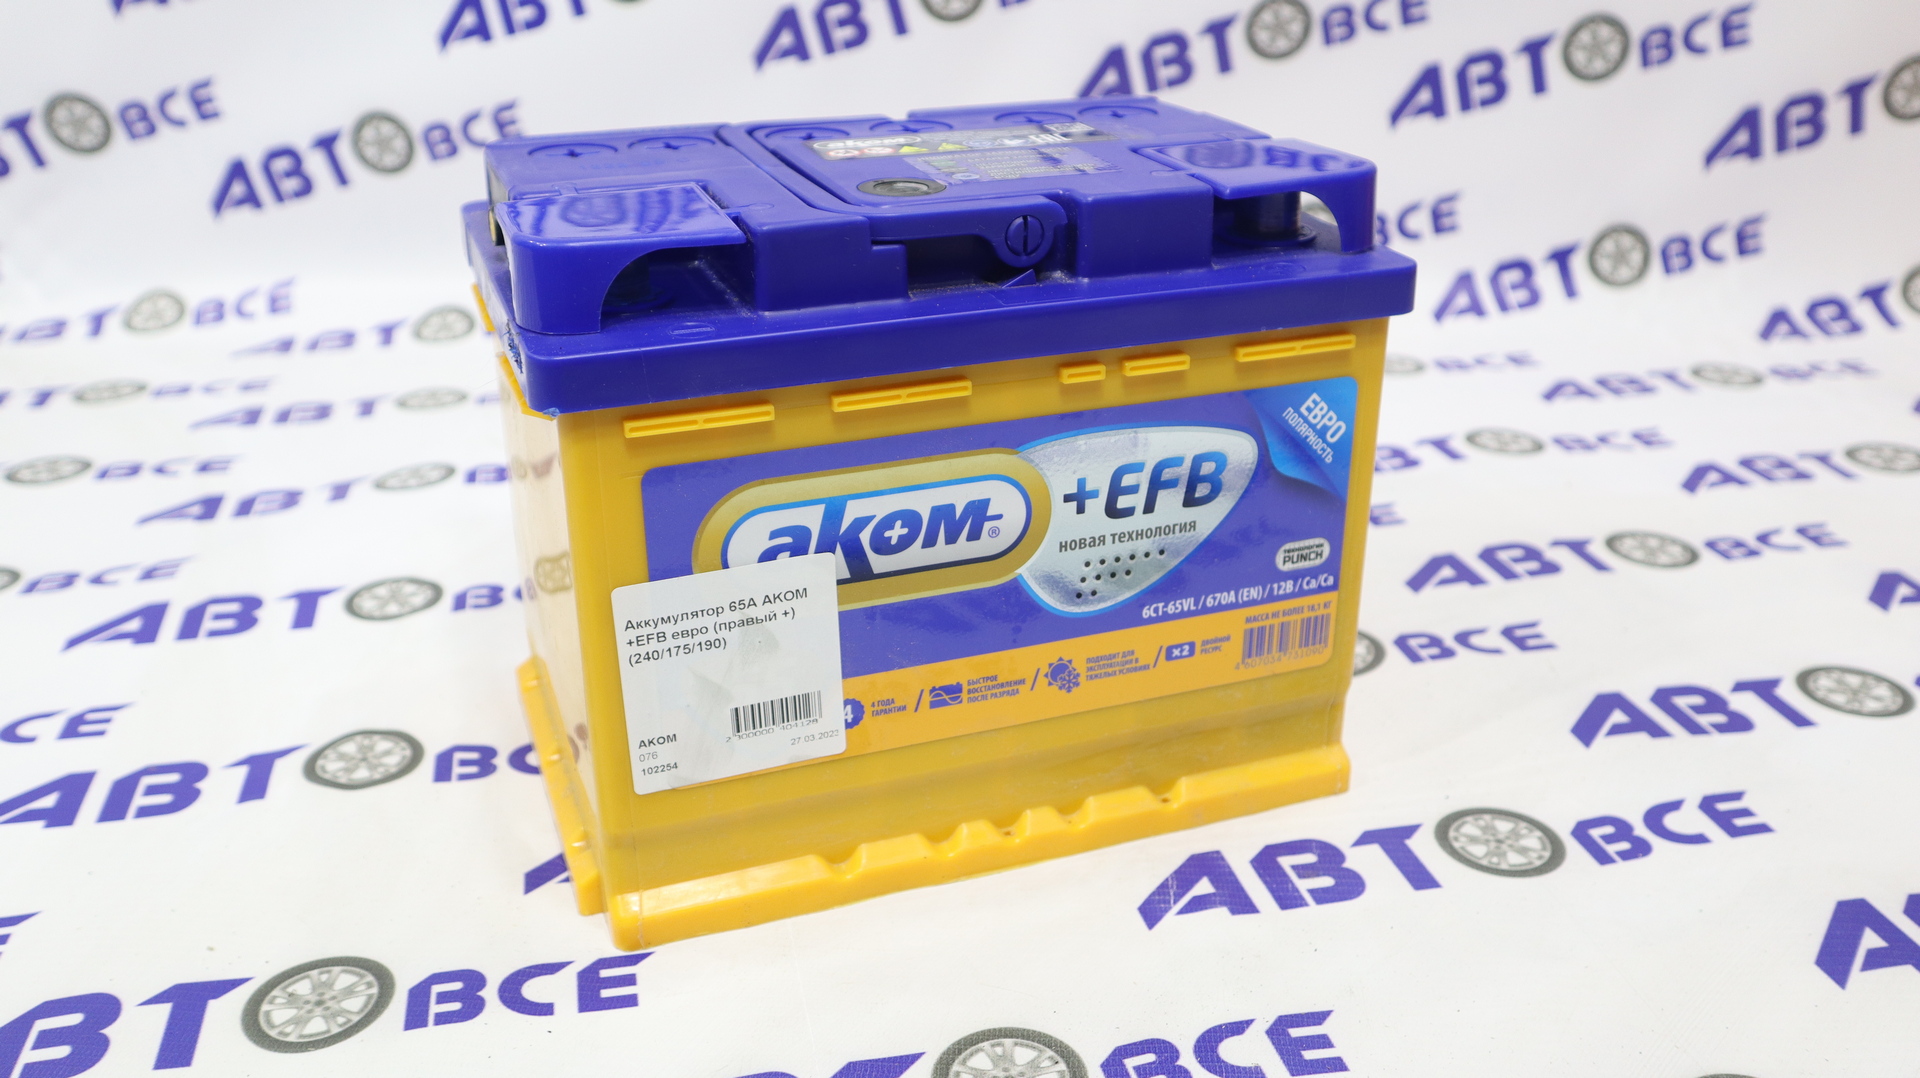 Аккумулятор 65А AKOM +EFB евро (правый +) (240/175/190)